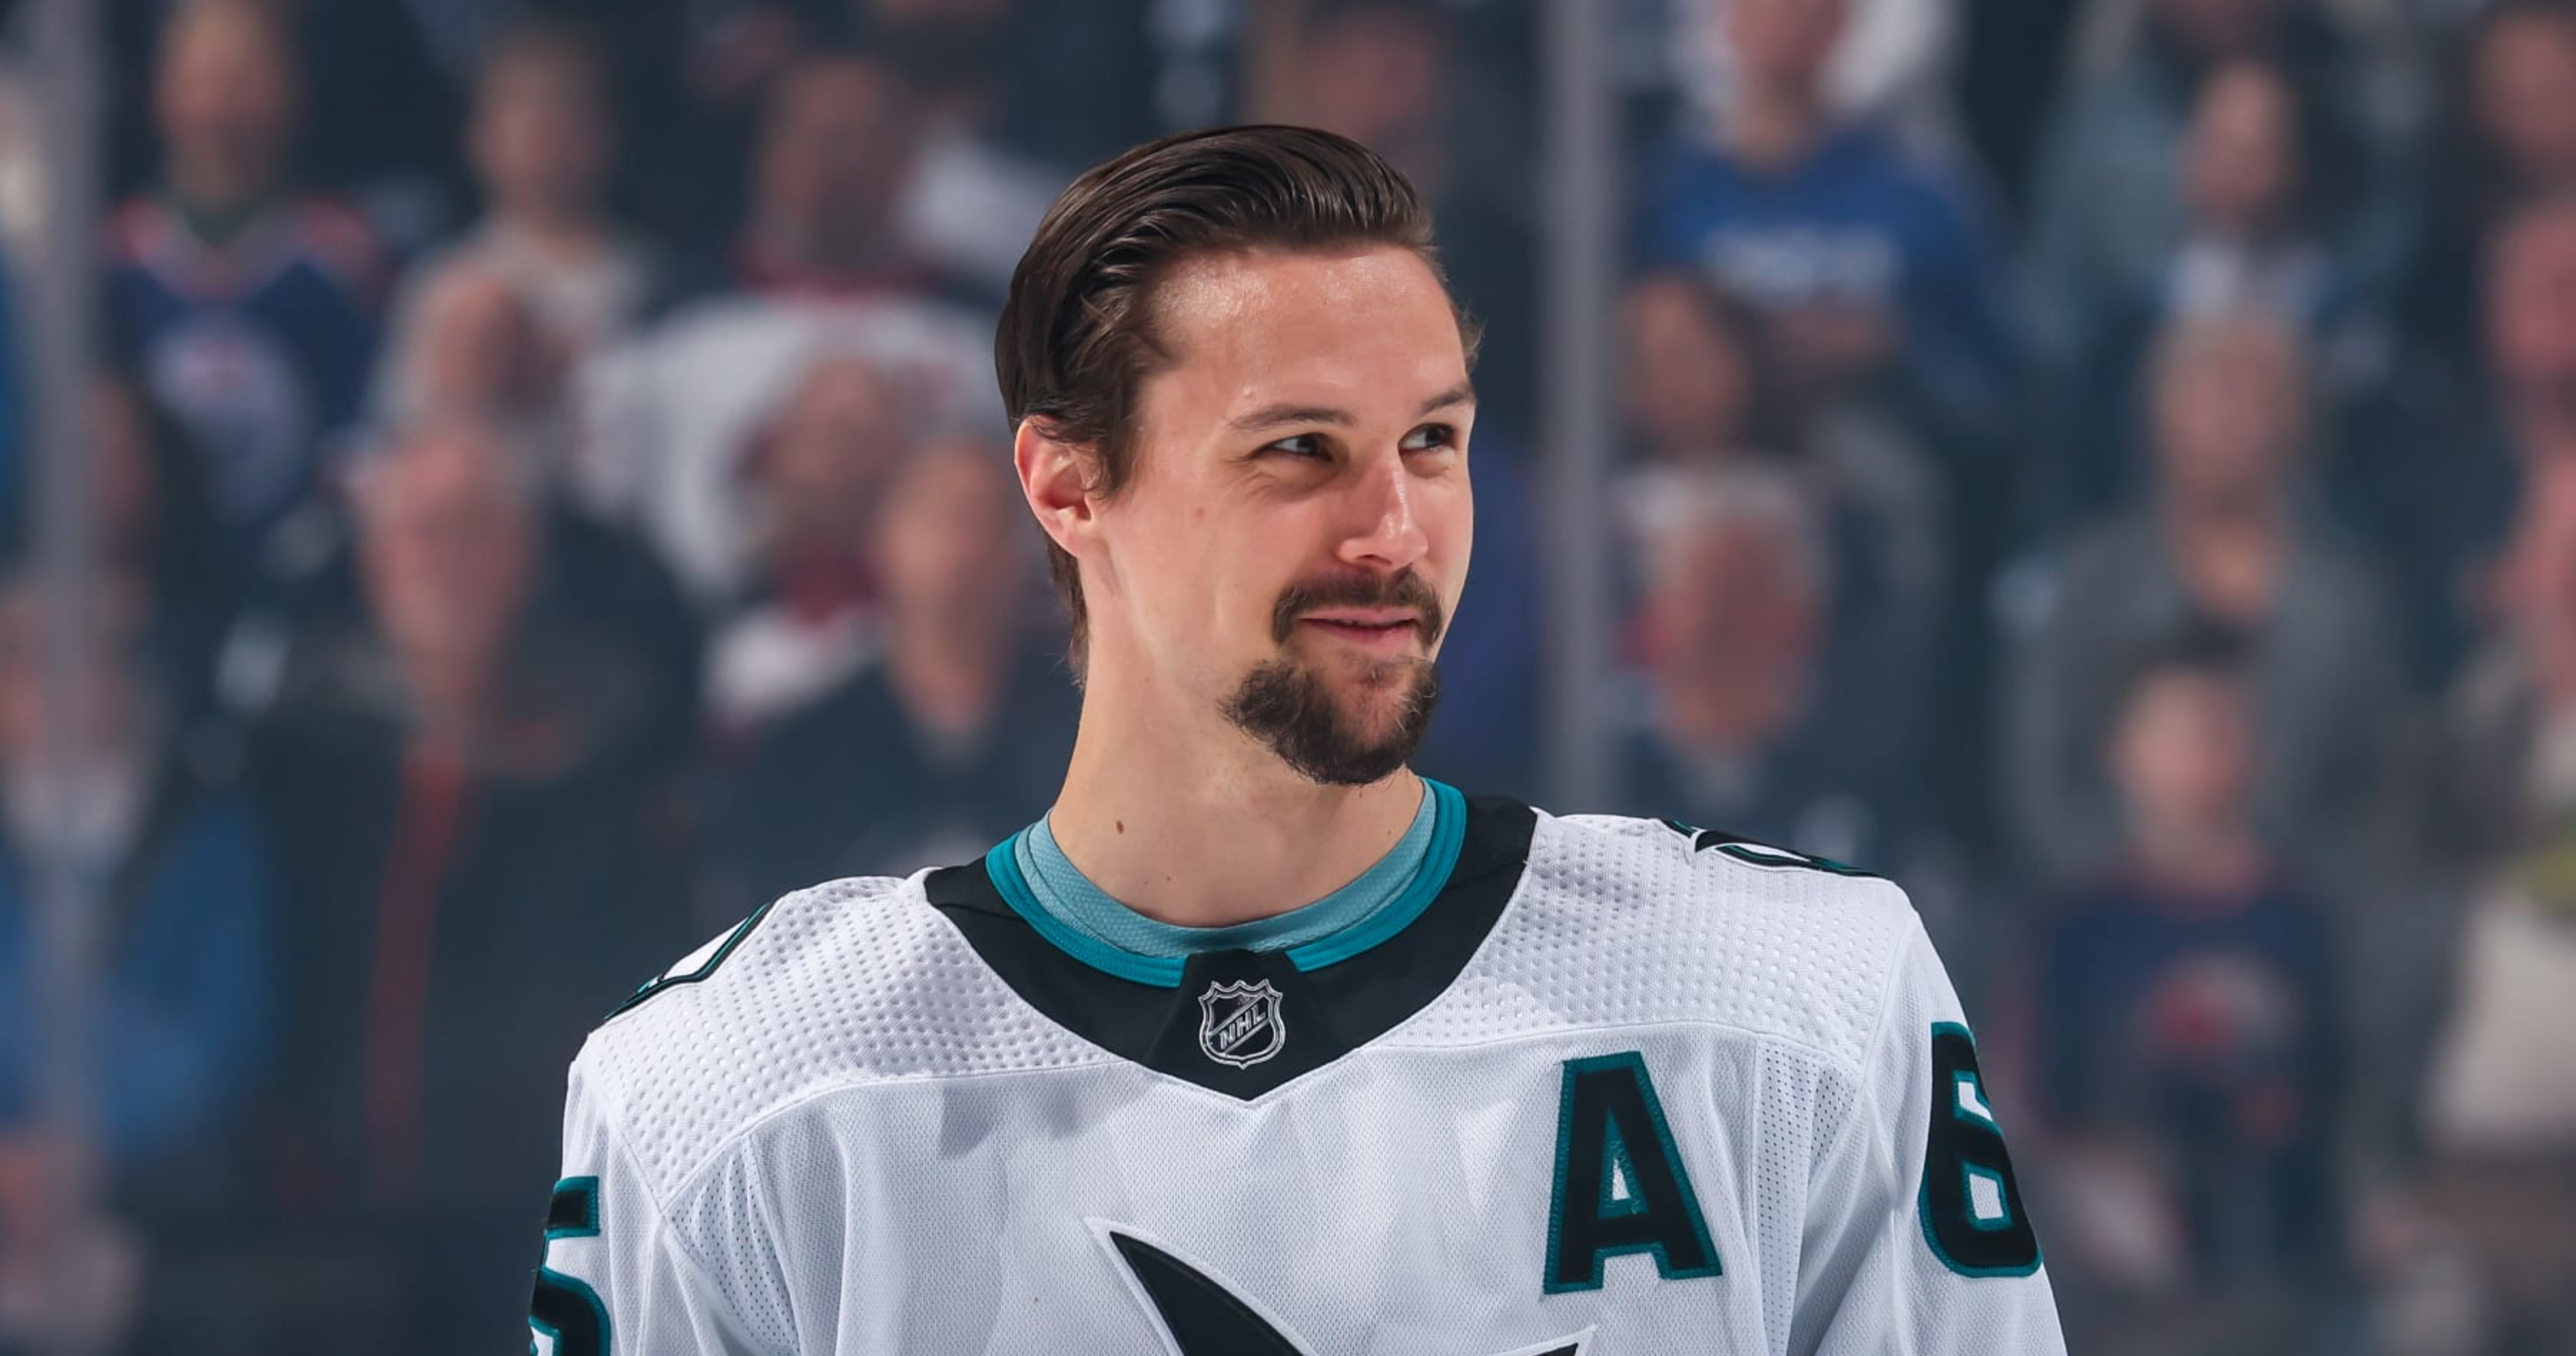 Sharks finally have a timeline for rebuild after Karlsson trade